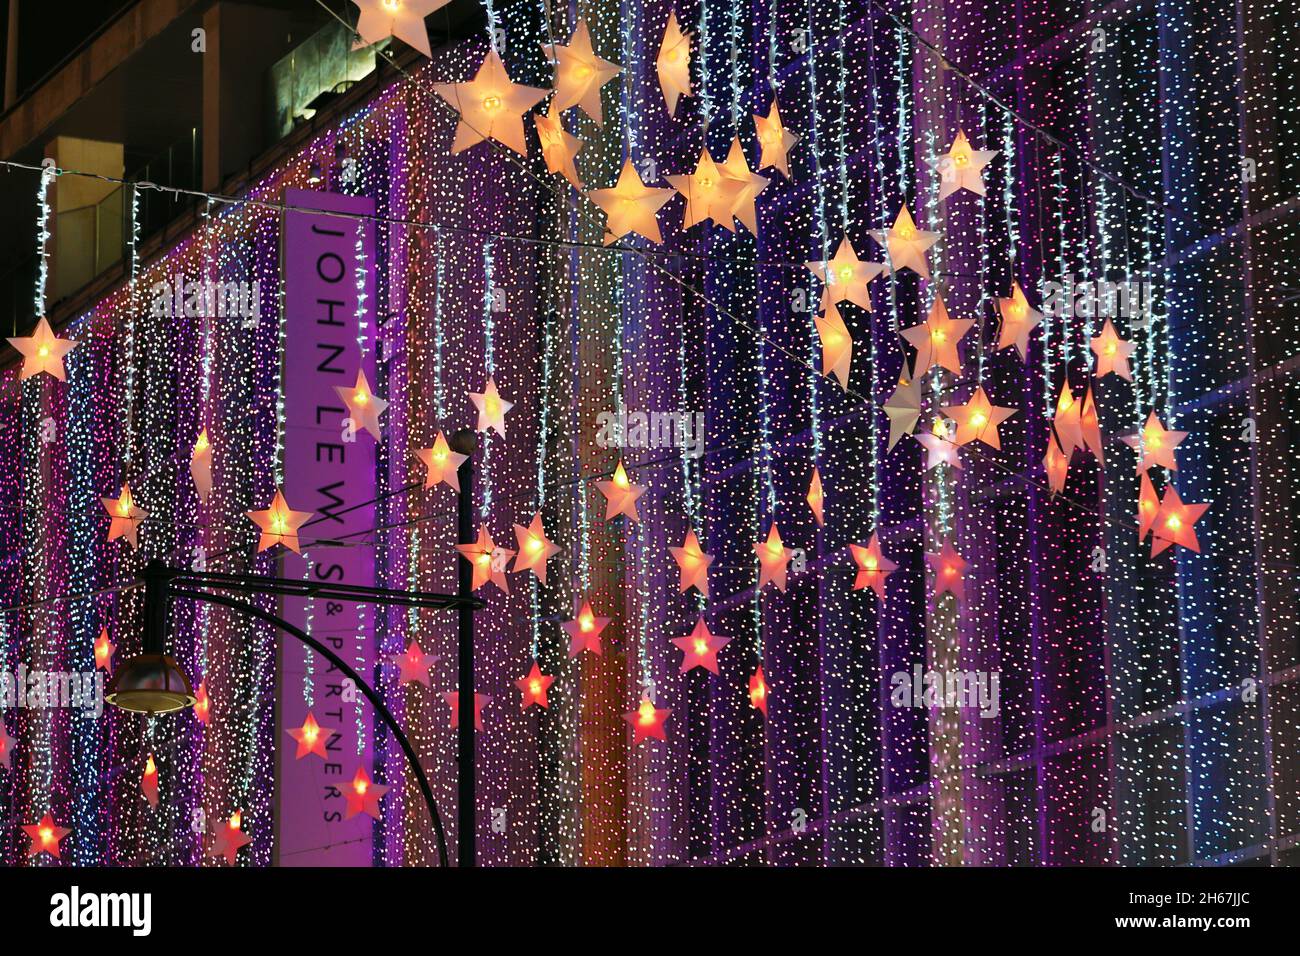 Londres, Royaume-Uni.13 novembre 2021.Décorations de Noël en forme d'étoile à Oxford Street et John Lewis grand magasin à Londres, Angleterre crédit: Paul Brown/Alay Live News Banque D'Images